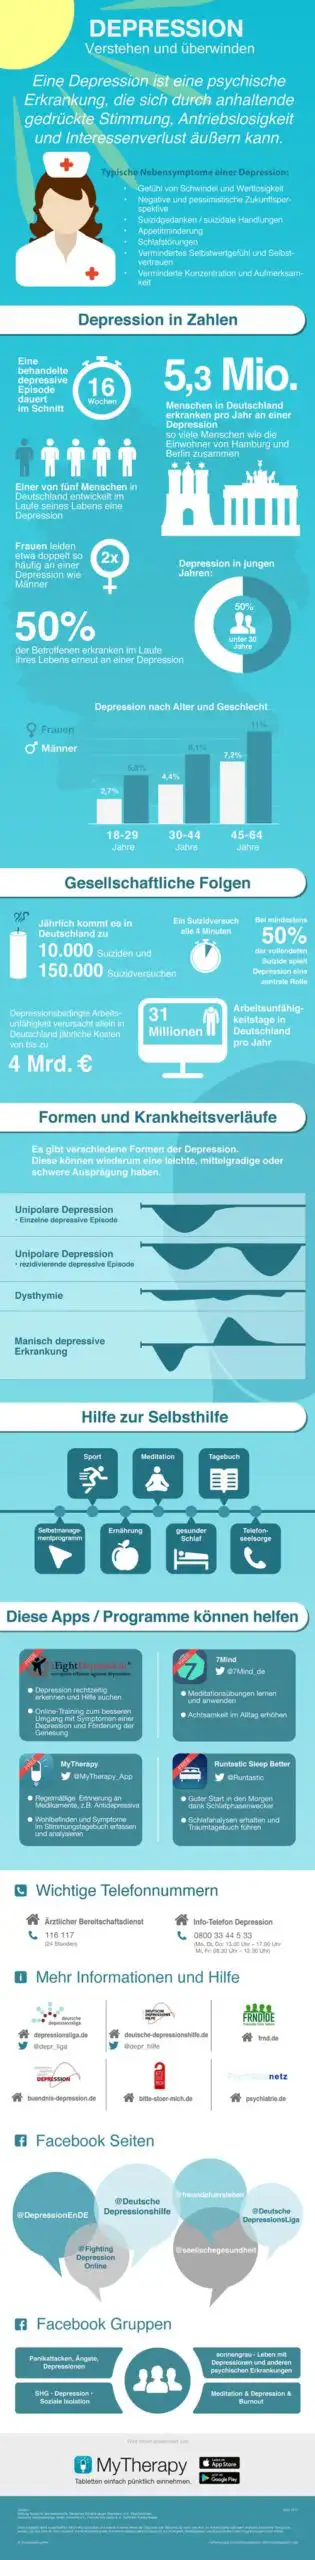 Infografik: Depression verstehen und überwinden